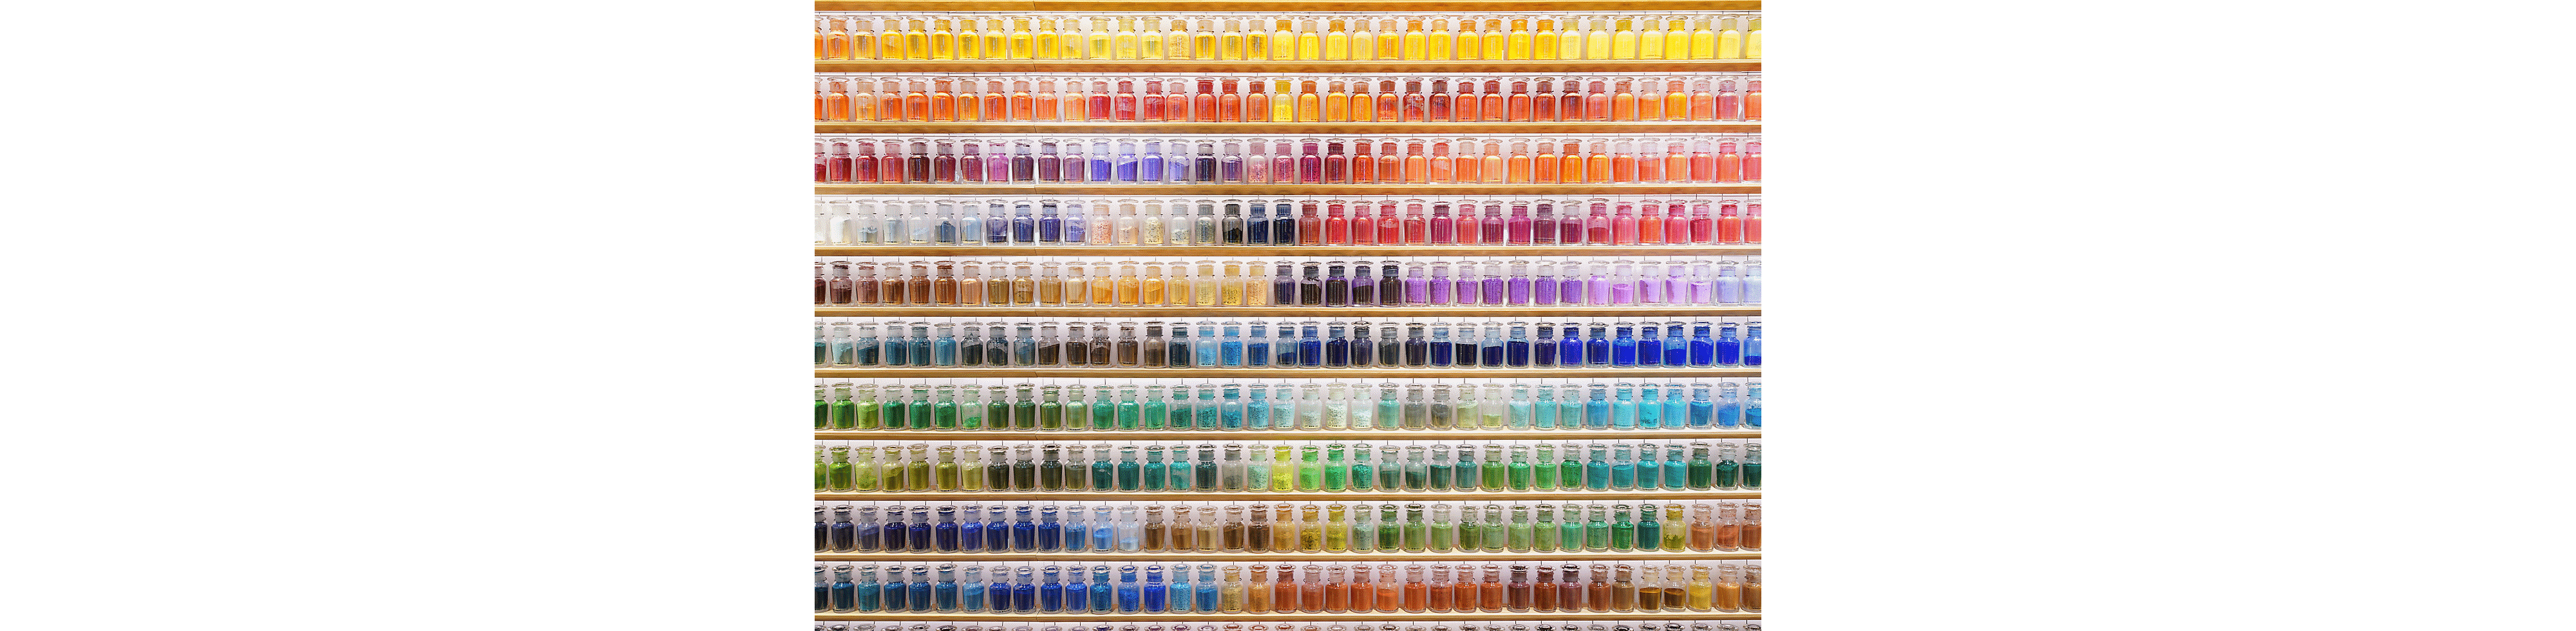 Imagen de ejemplo de una pared llena de botellas de colores